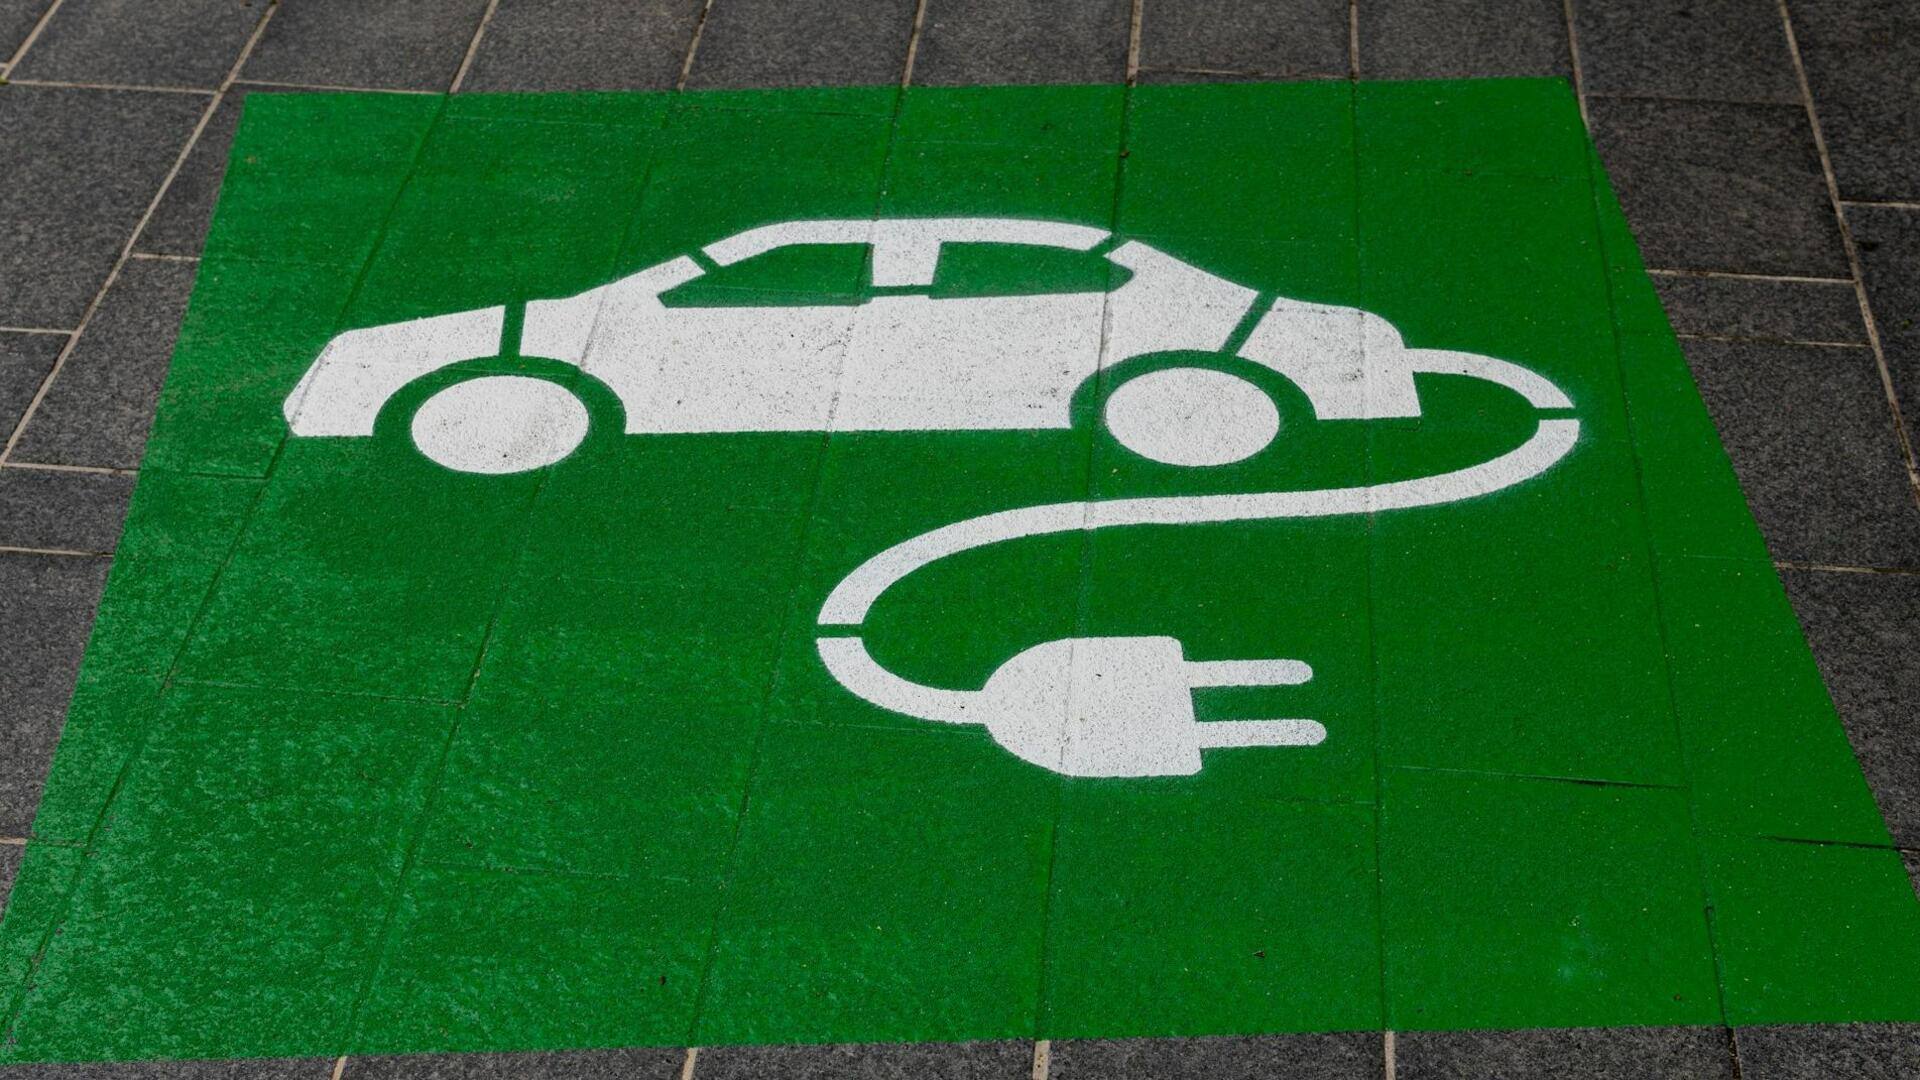 नई इलेक्ट्रिक वाहन नीति के जल्द जारी होंगे दिशा-निर्देश, कंपनियों के साथ होगी बैठक 